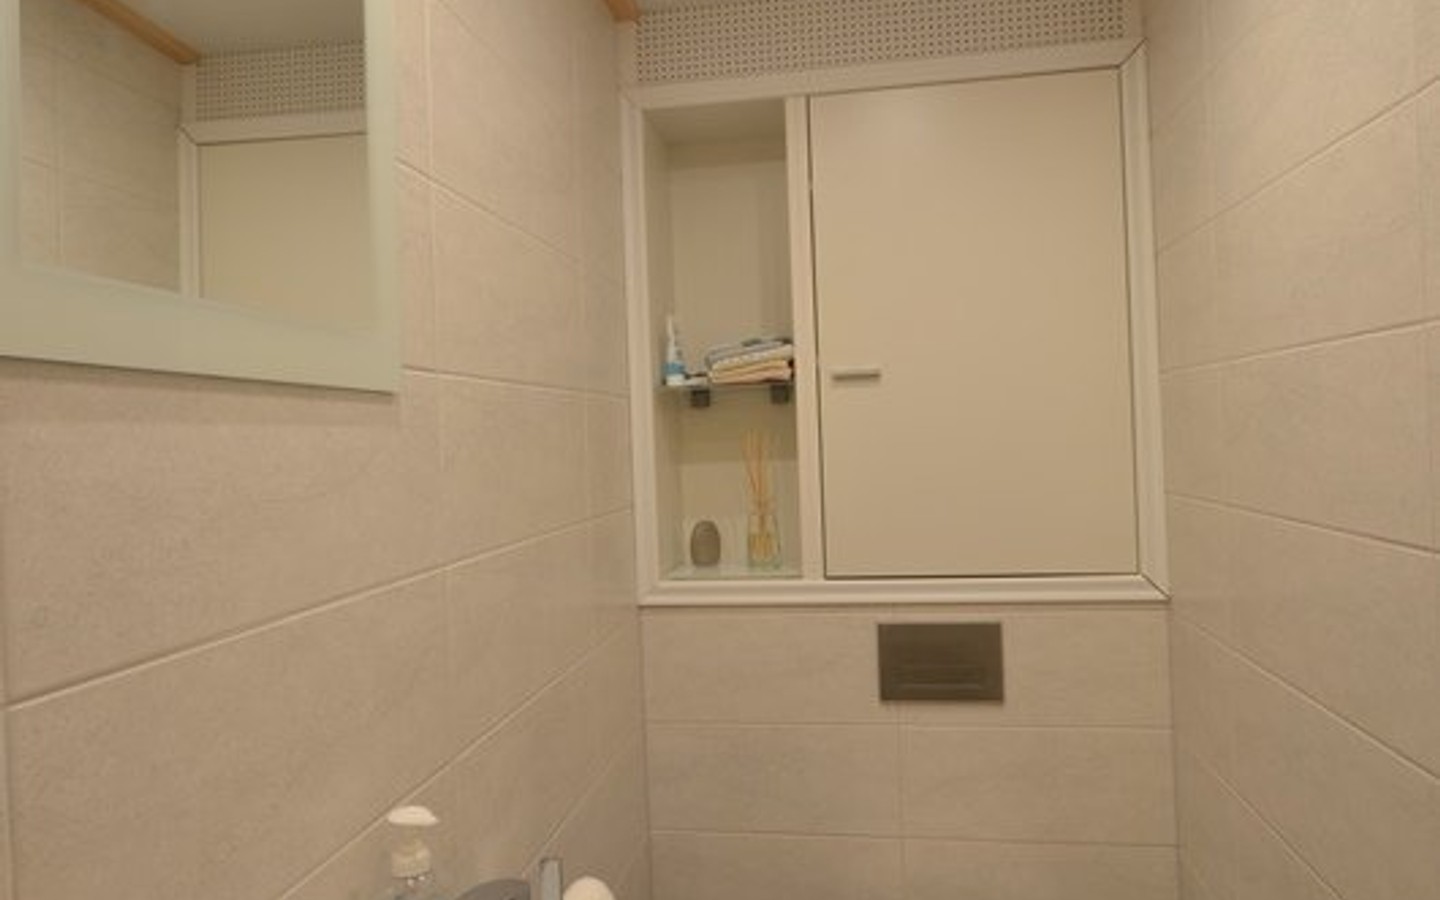 WC - Weinheim (Schollstr.): Gepflegte 3,5-Zimmerwohnung, 89,88 qm mit guter Raumaufteilung